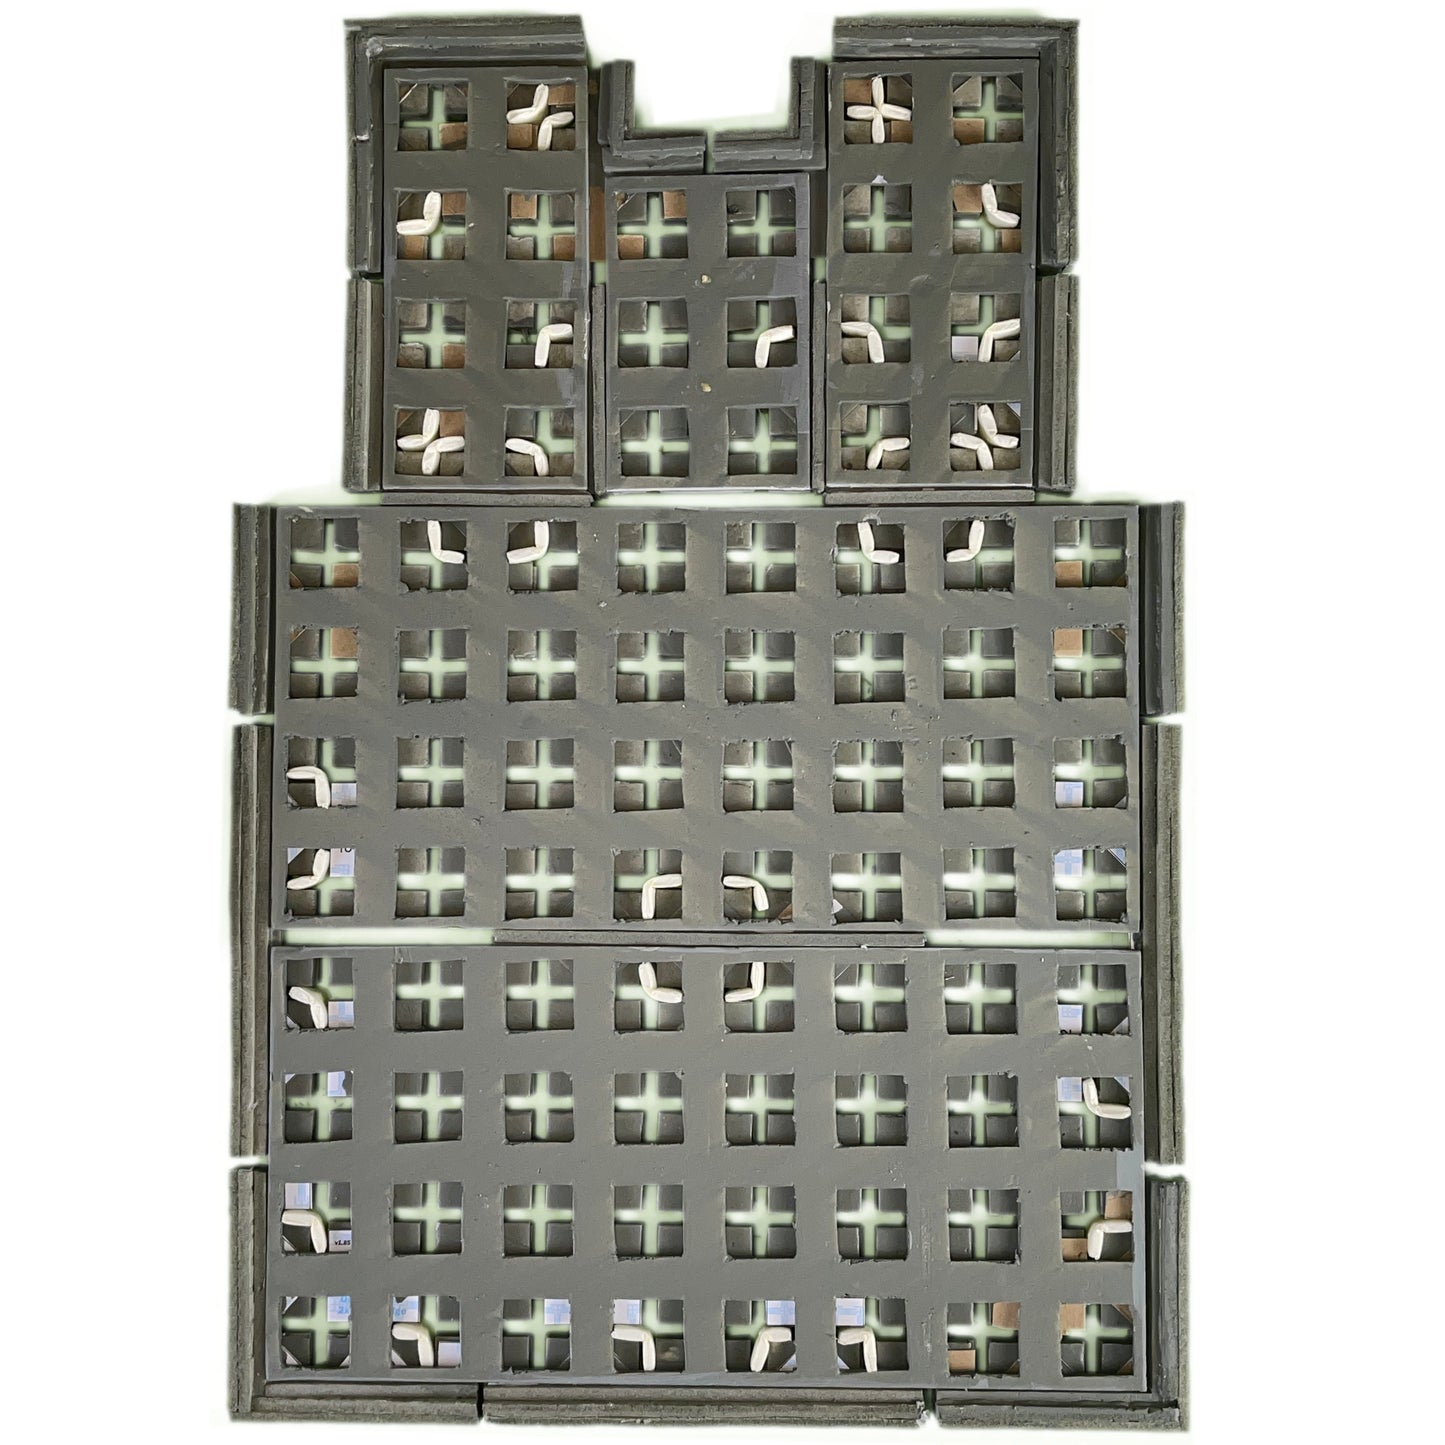 Hidden plugs connect together floor sections using TERRAINO Tabletop Terrain Modular Floor tiles.